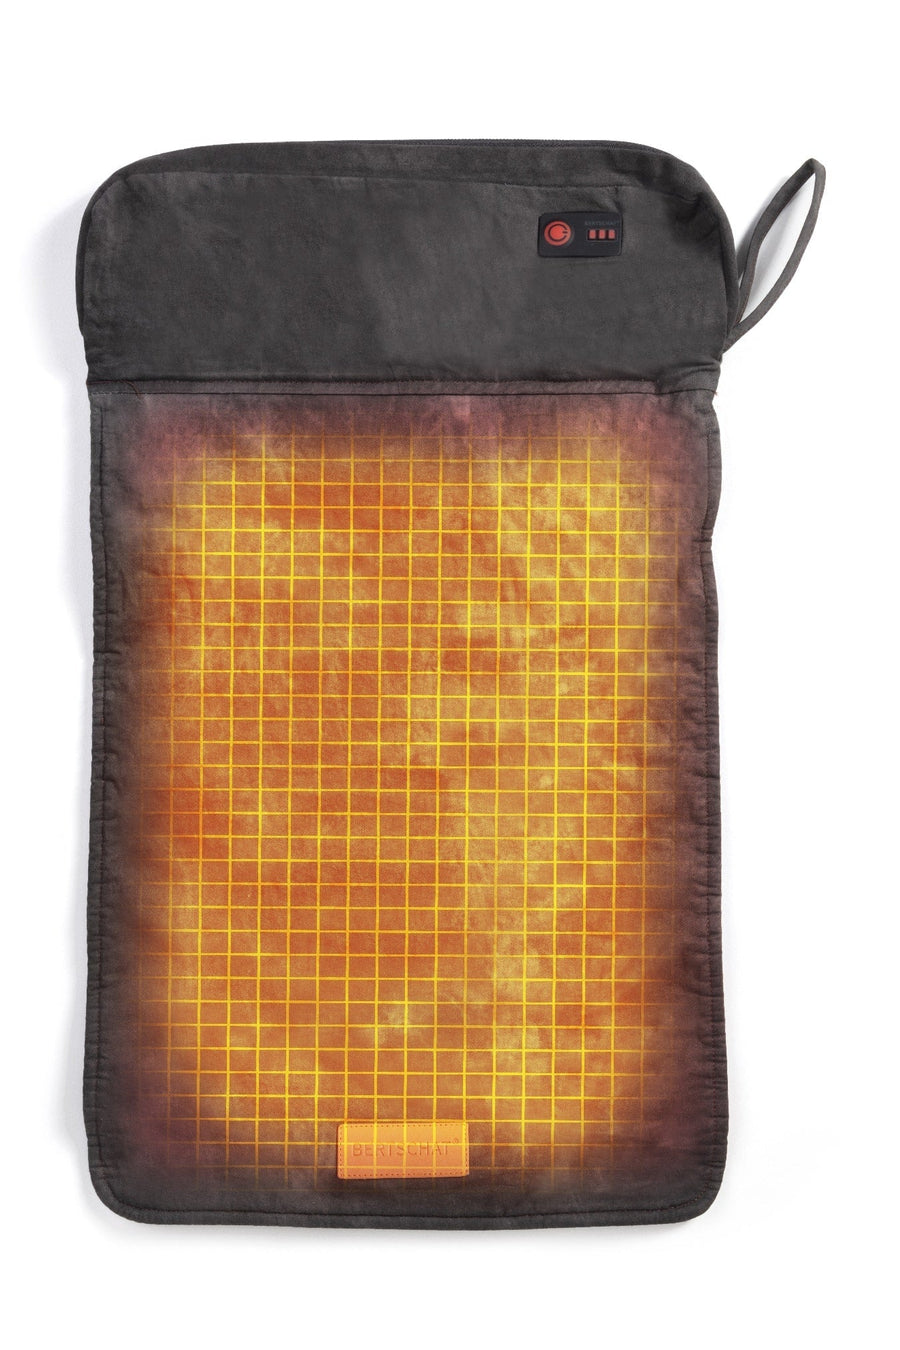 Varmepude – Opvarmet pude 50 x 30 cm | USB - Sort & Grøn